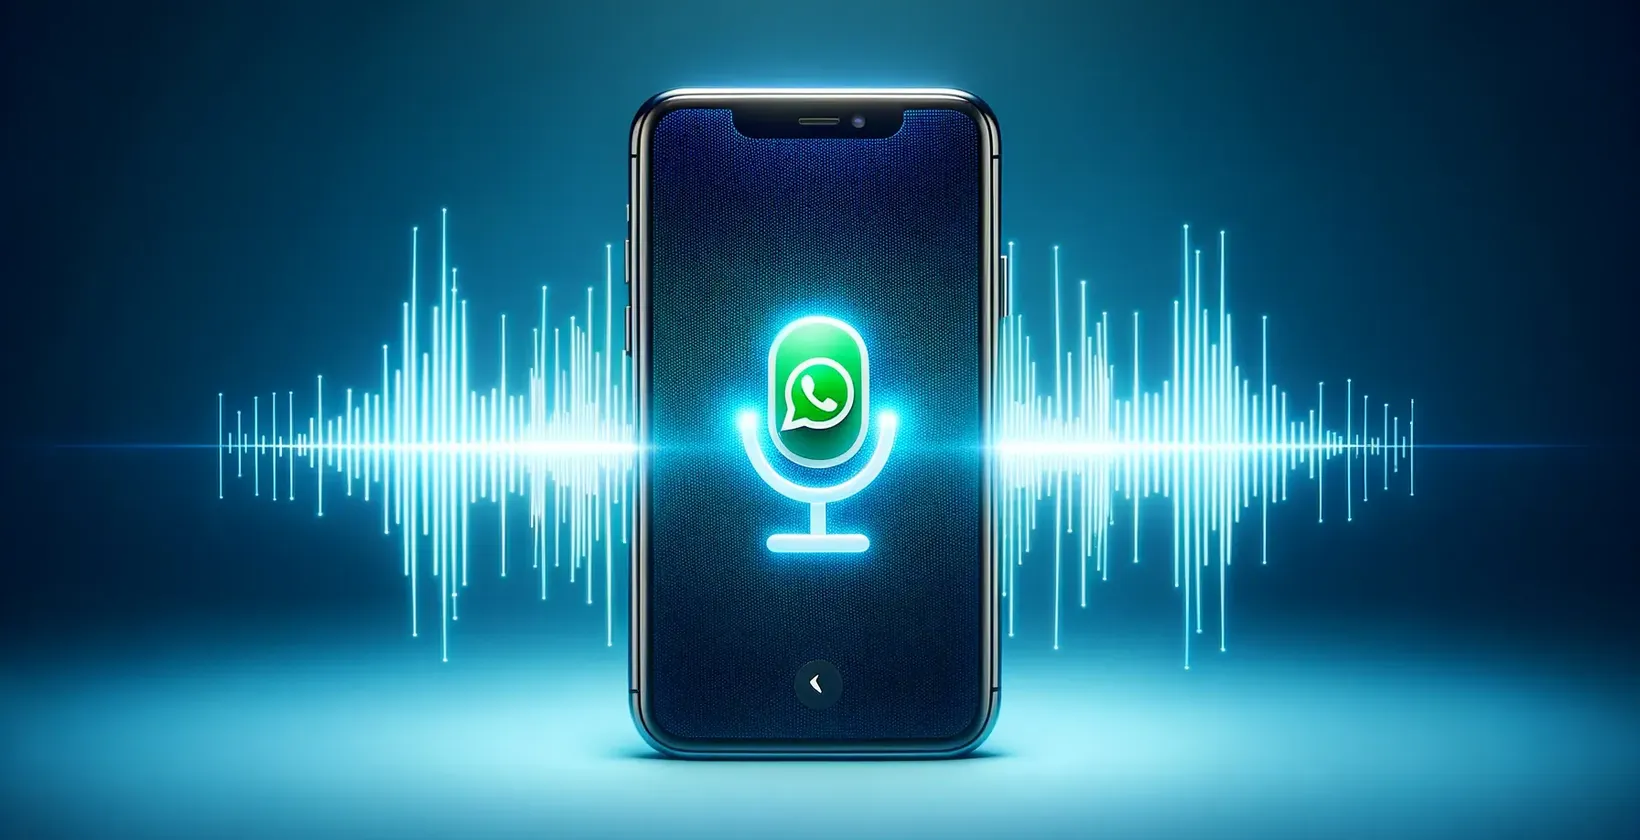 श्रुतलेख कार्यक्षमता के साथ WhatsApp वॉयस कॉल की अवधारणा का प्रतिनिधित्व करने वाली छवि